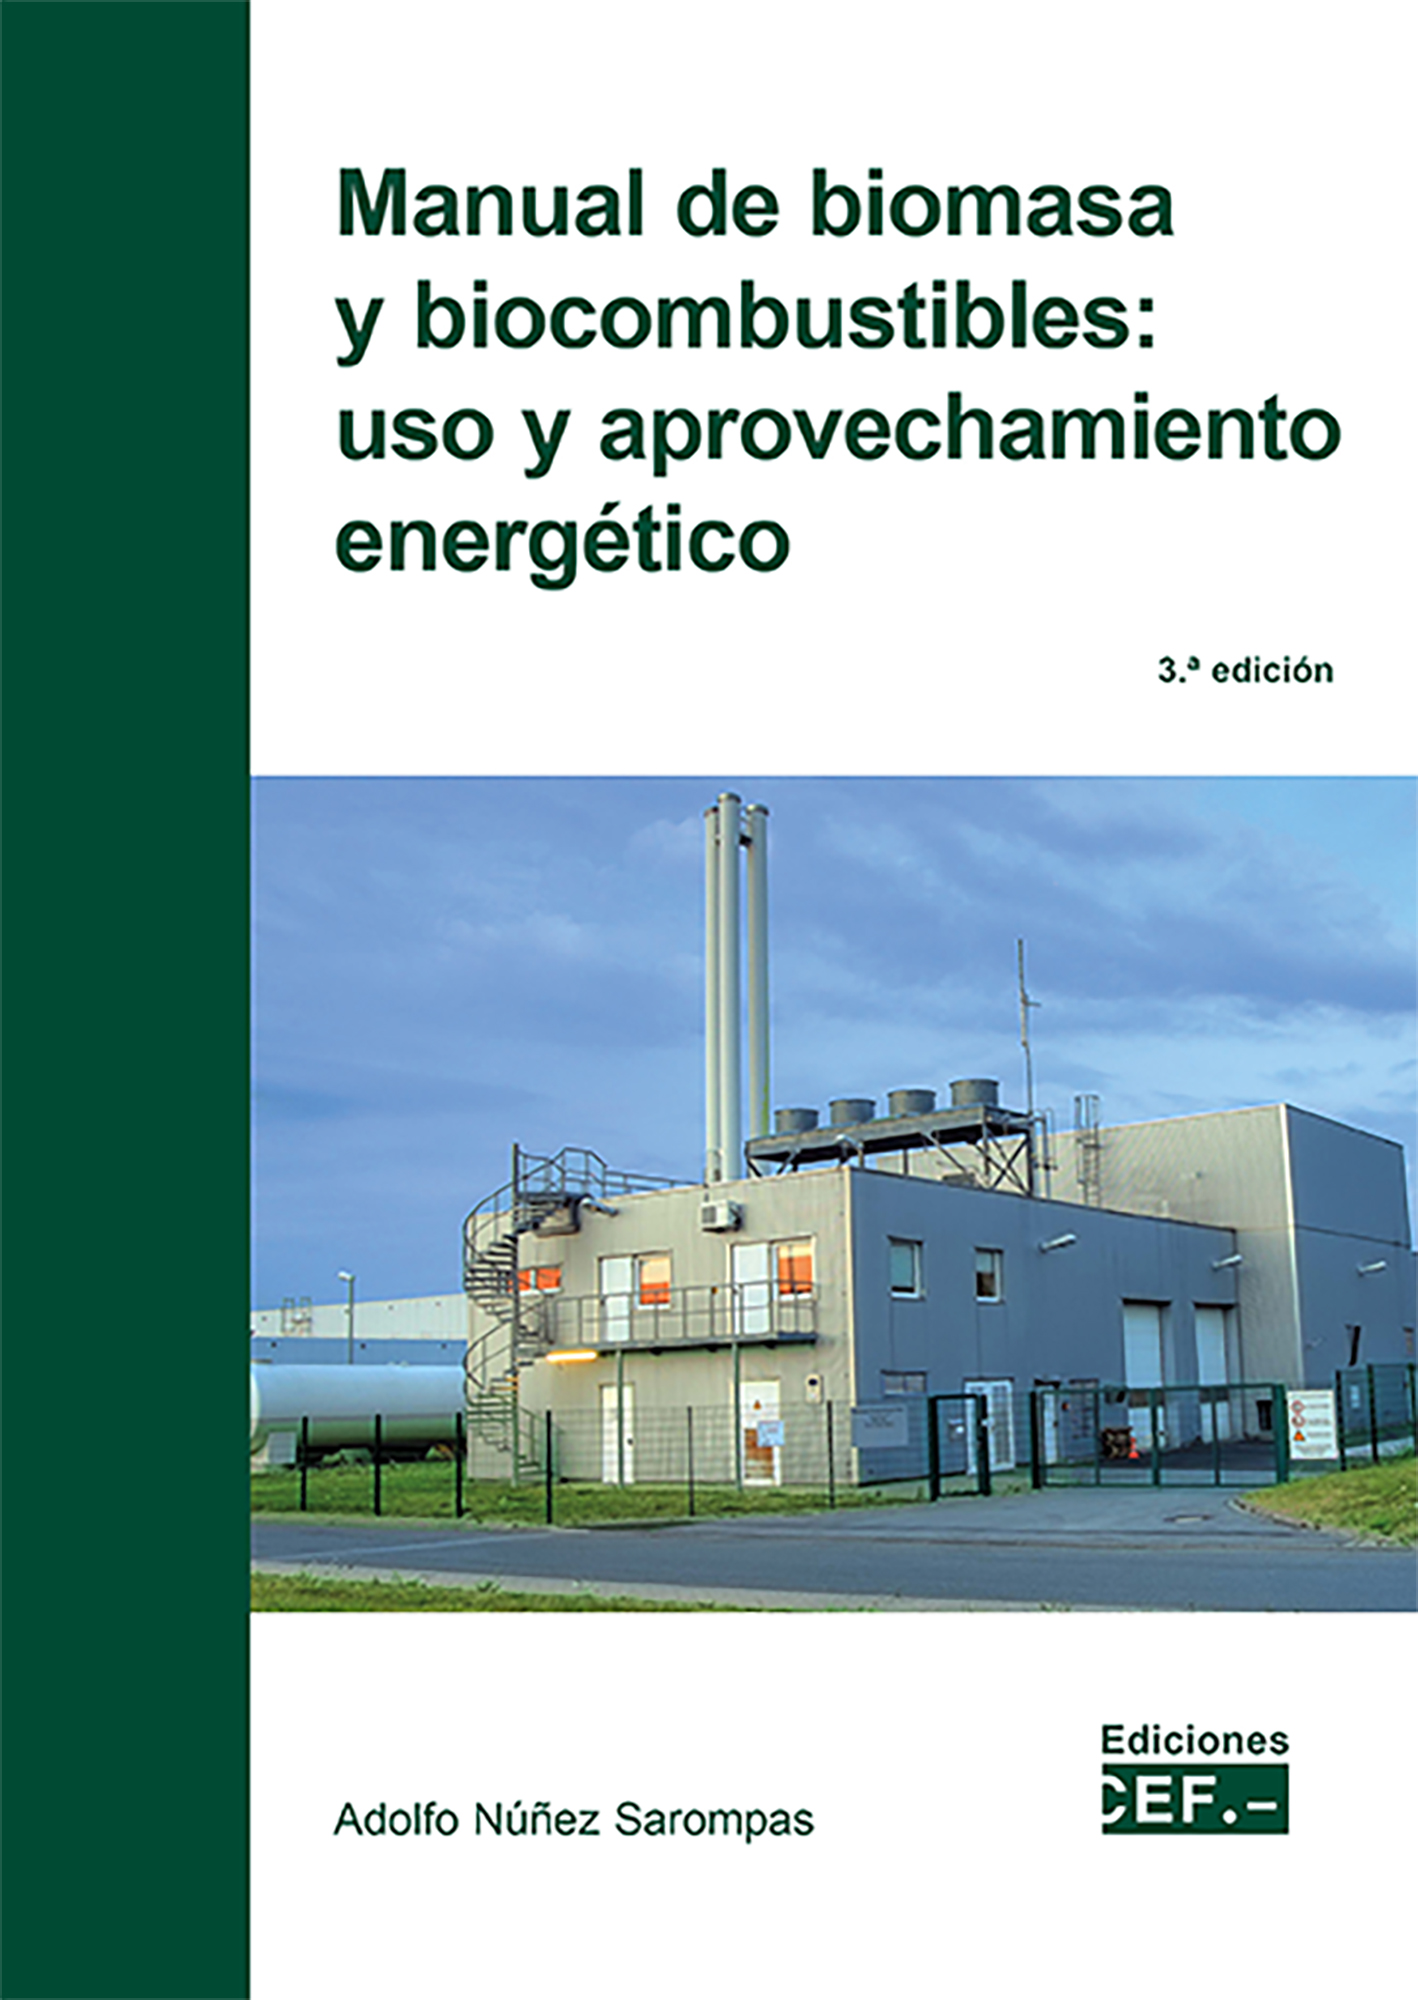 Manual de biomasa y biocombustibles